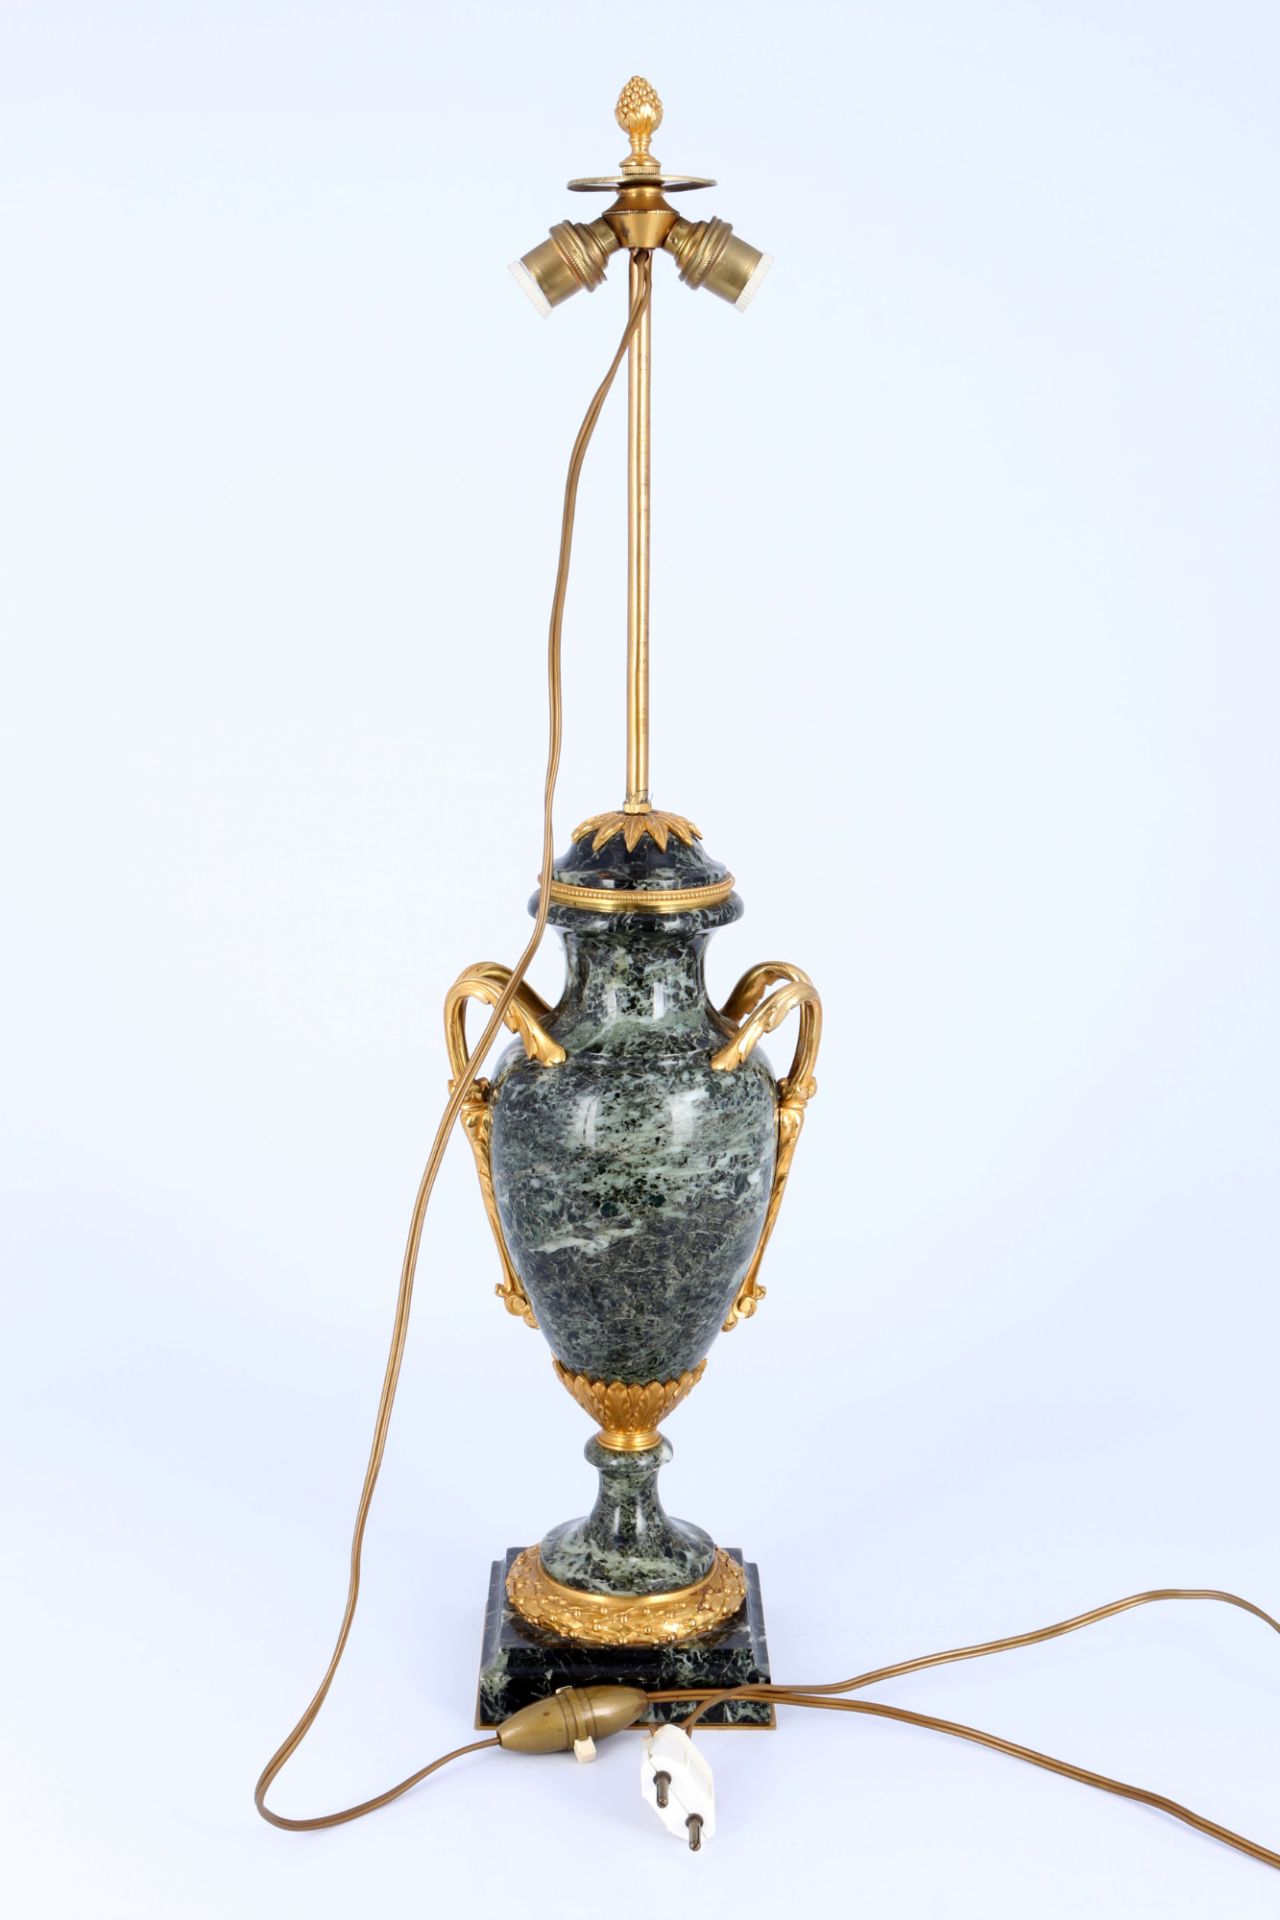 Vasenlampe in Louis XV Stil , - Bild 4 aus 4